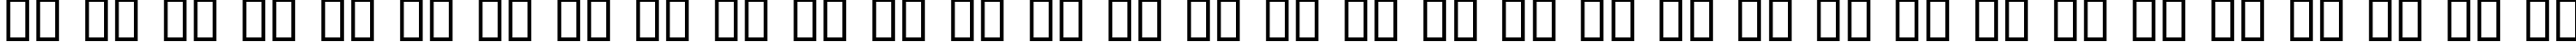 Пример написания русского алфавита шрифтом ElHombre